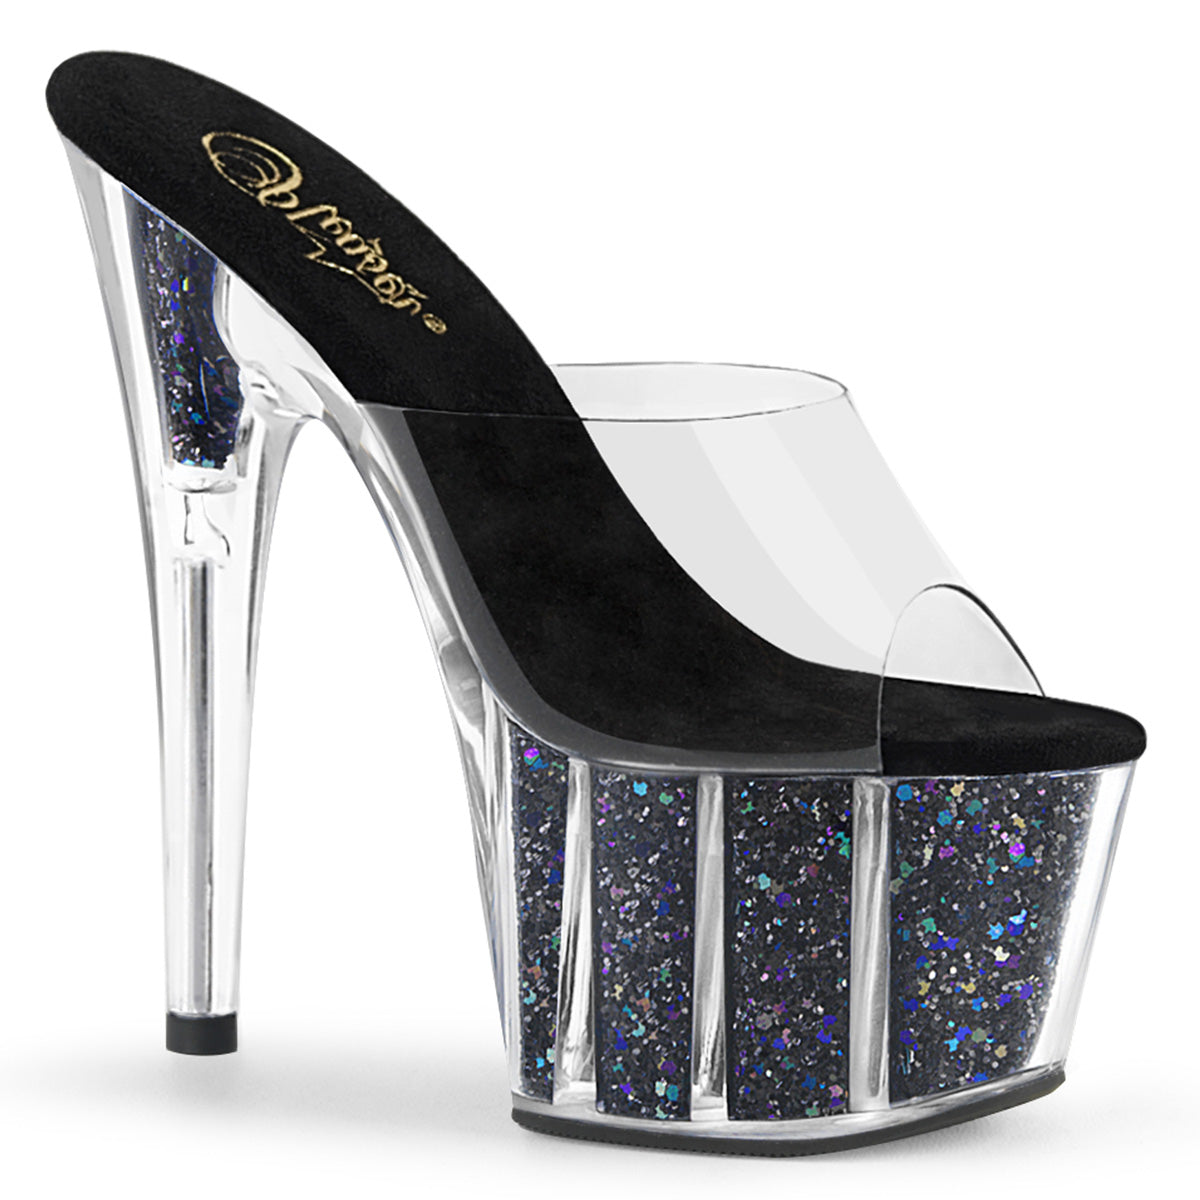 Pleaser Womens Sandals ADORE-701CG Clr/Blk Confetti Glitter